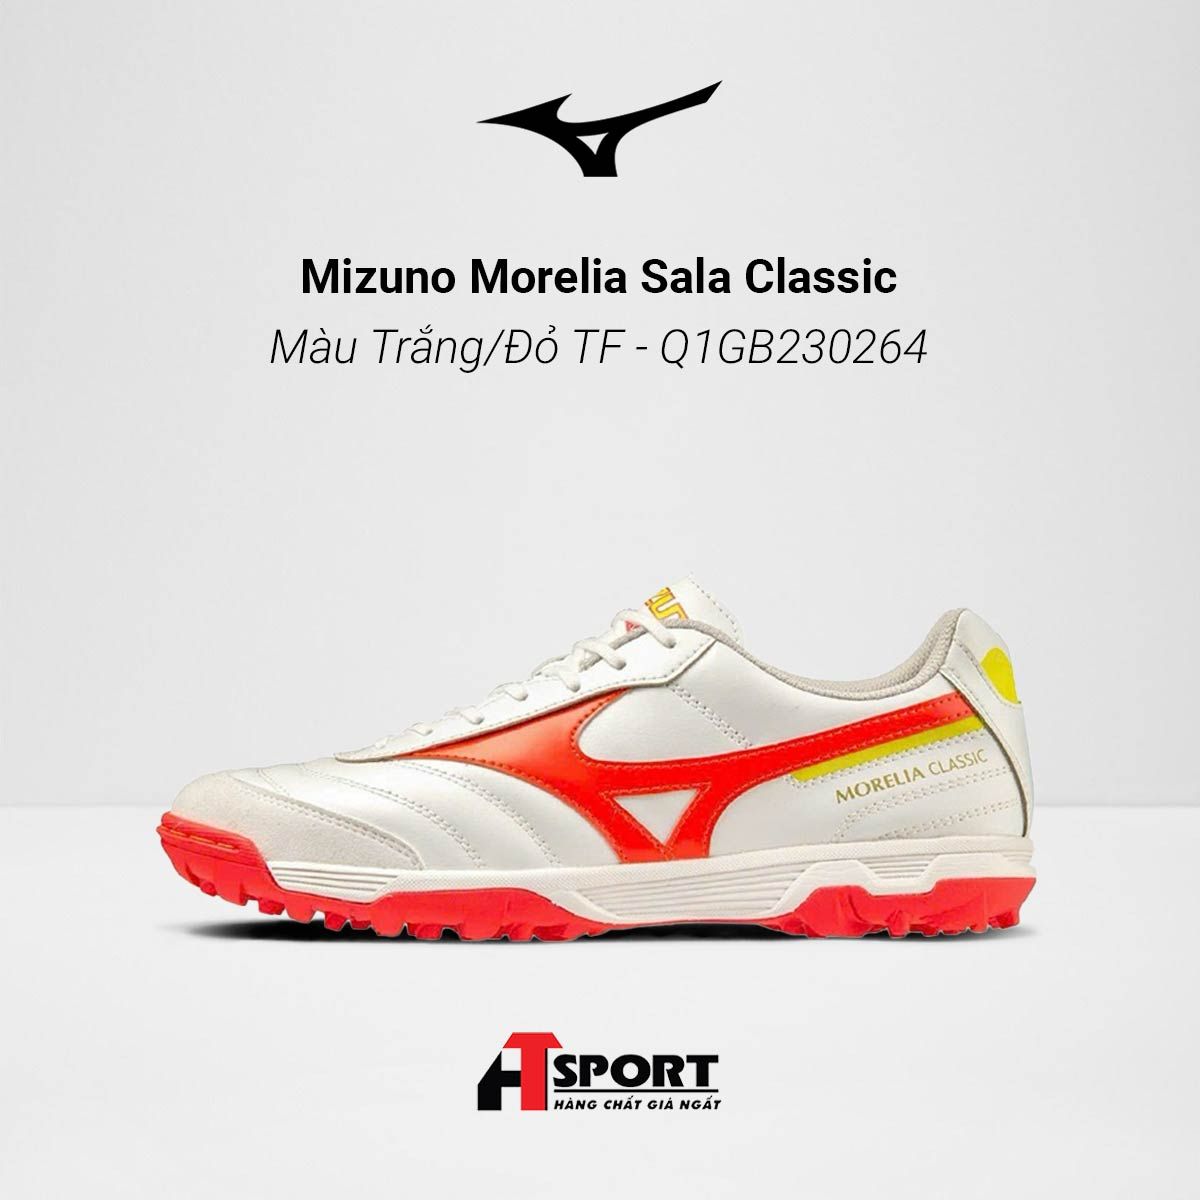  Mizuno Morelia Sala Classic Màu Trắng/Đỏ TF - Q1GB230264 